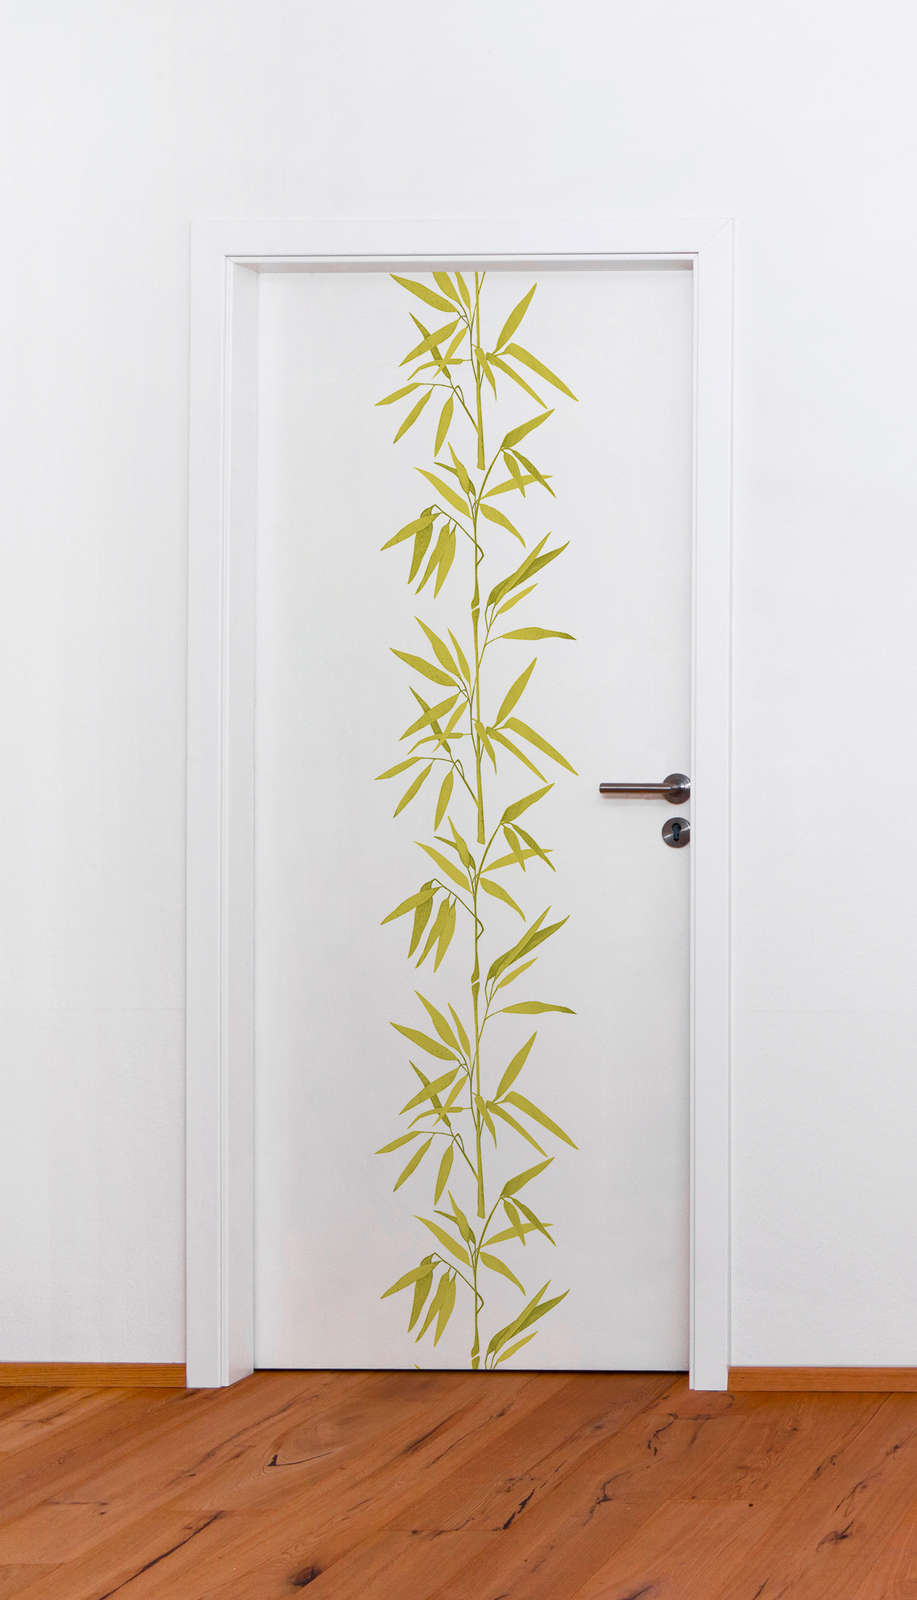             Vliesbehang wit met bamboepatroon - groen, wit
        